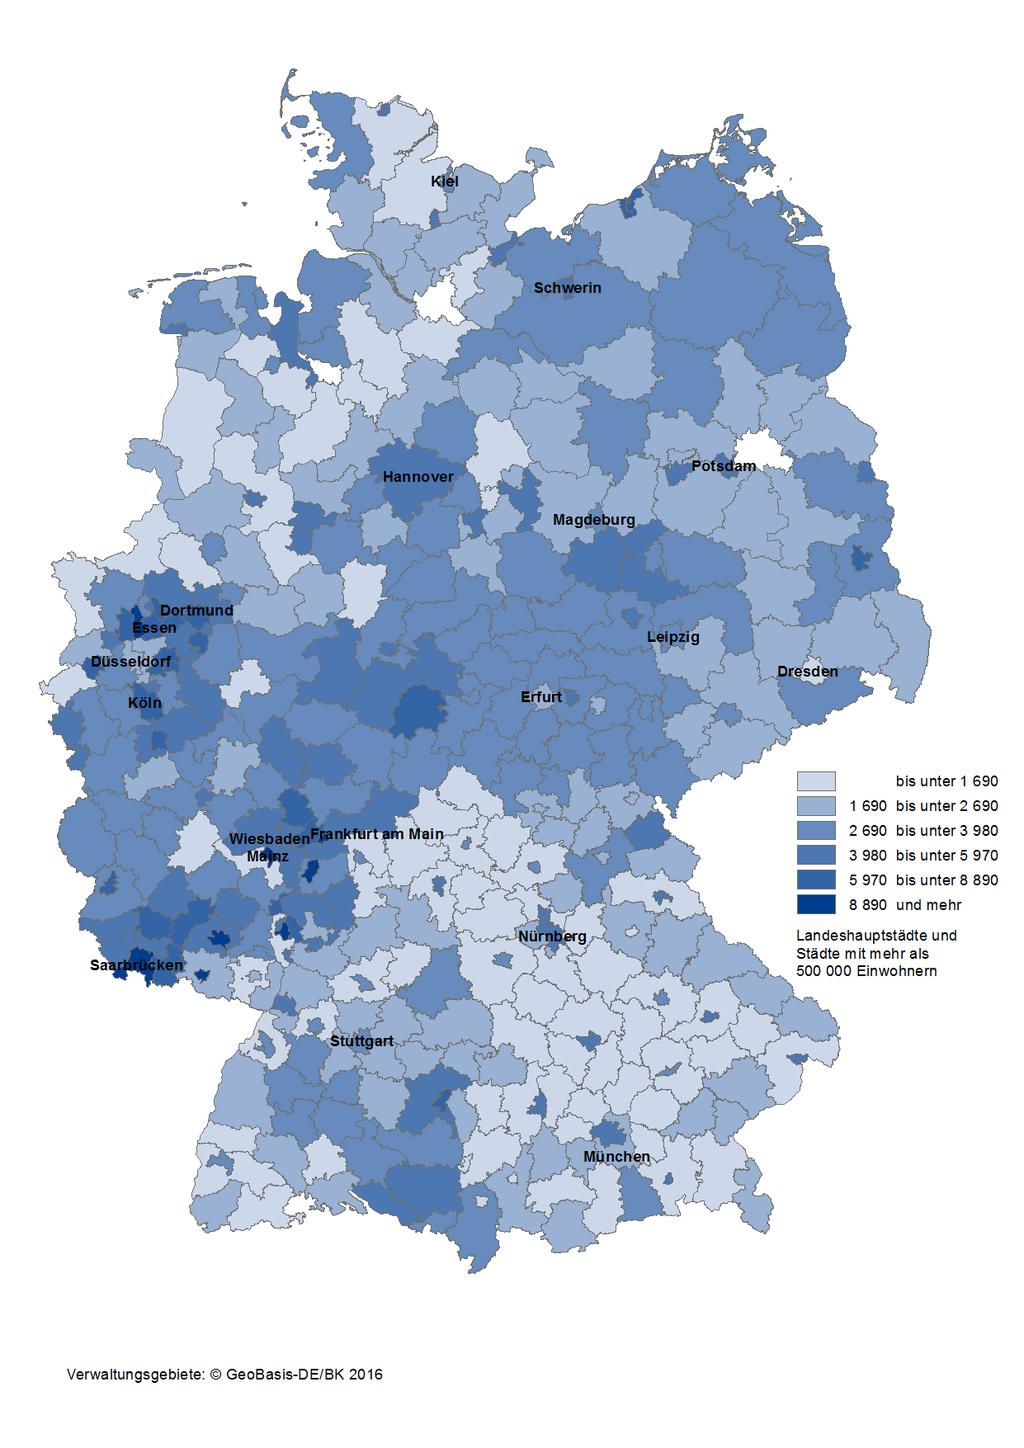 Karte 1: Integrierte kommunale Schulden der Kreisgebiete und kreisfreien Städte in Deutschland am 31.12.